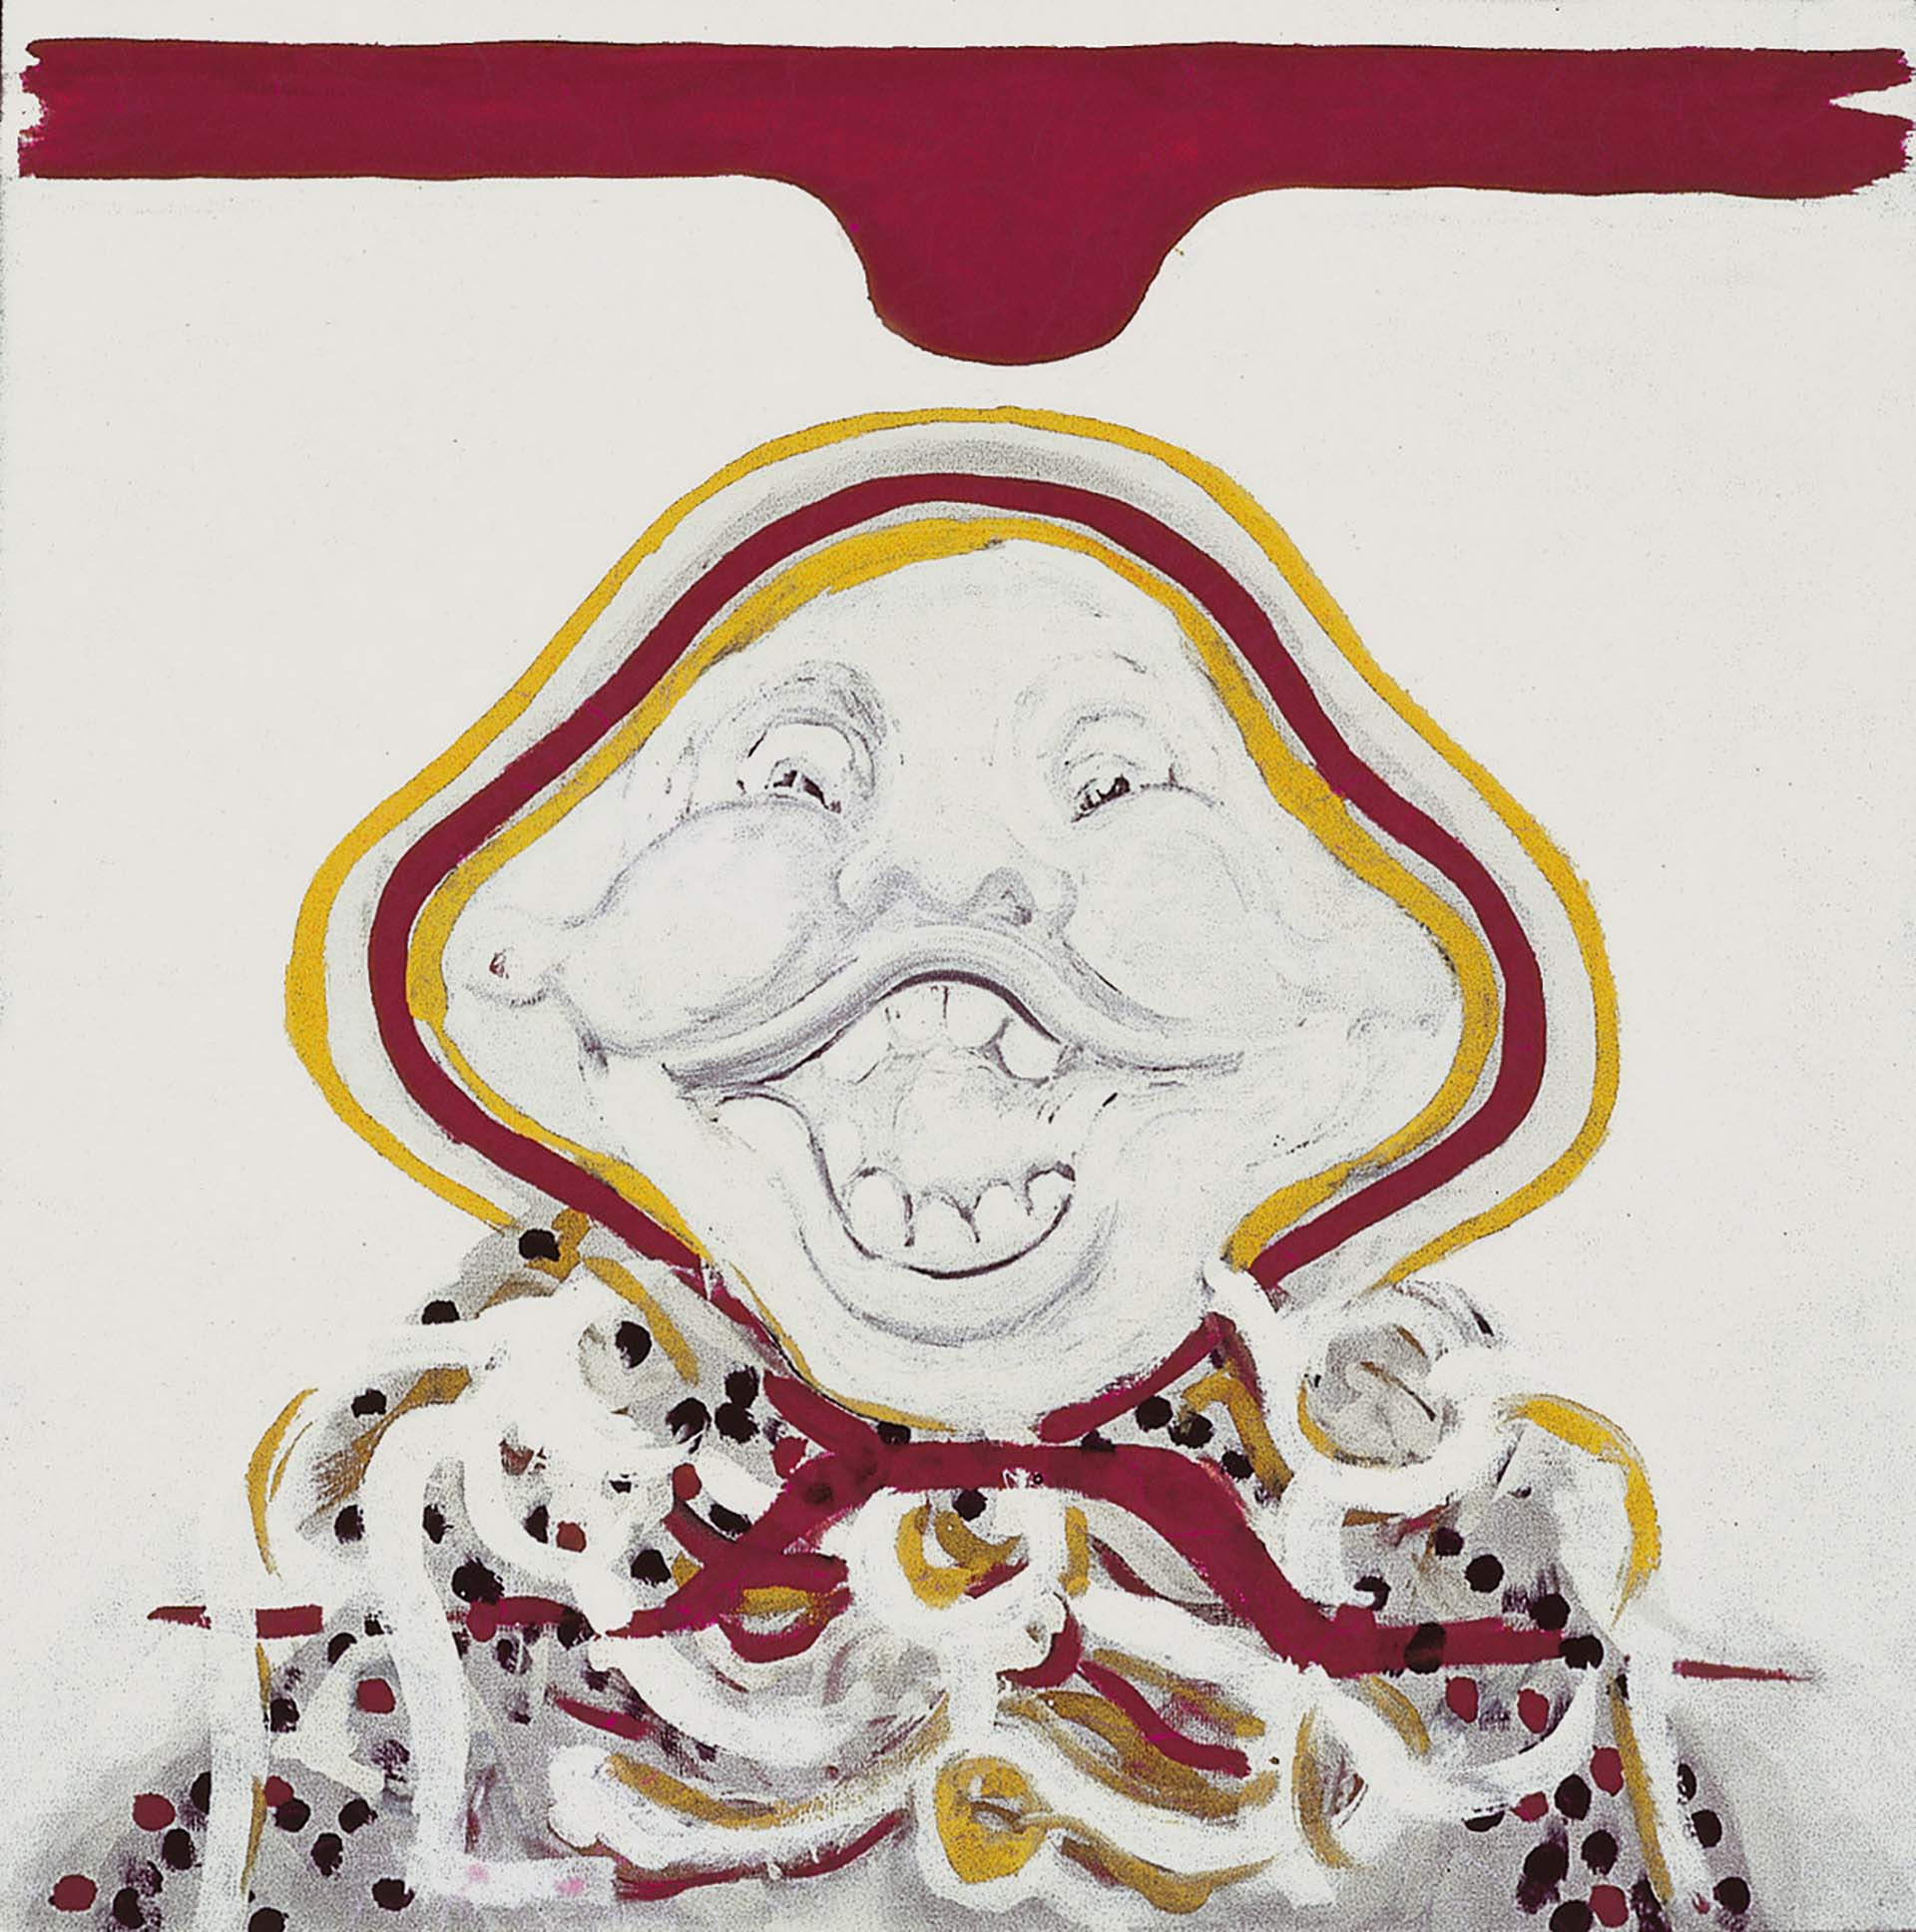 "Sin título", de la serie "La risa", de 1965, esmalte sobre tela, 150 x 150 cm, de Marie Orensanz